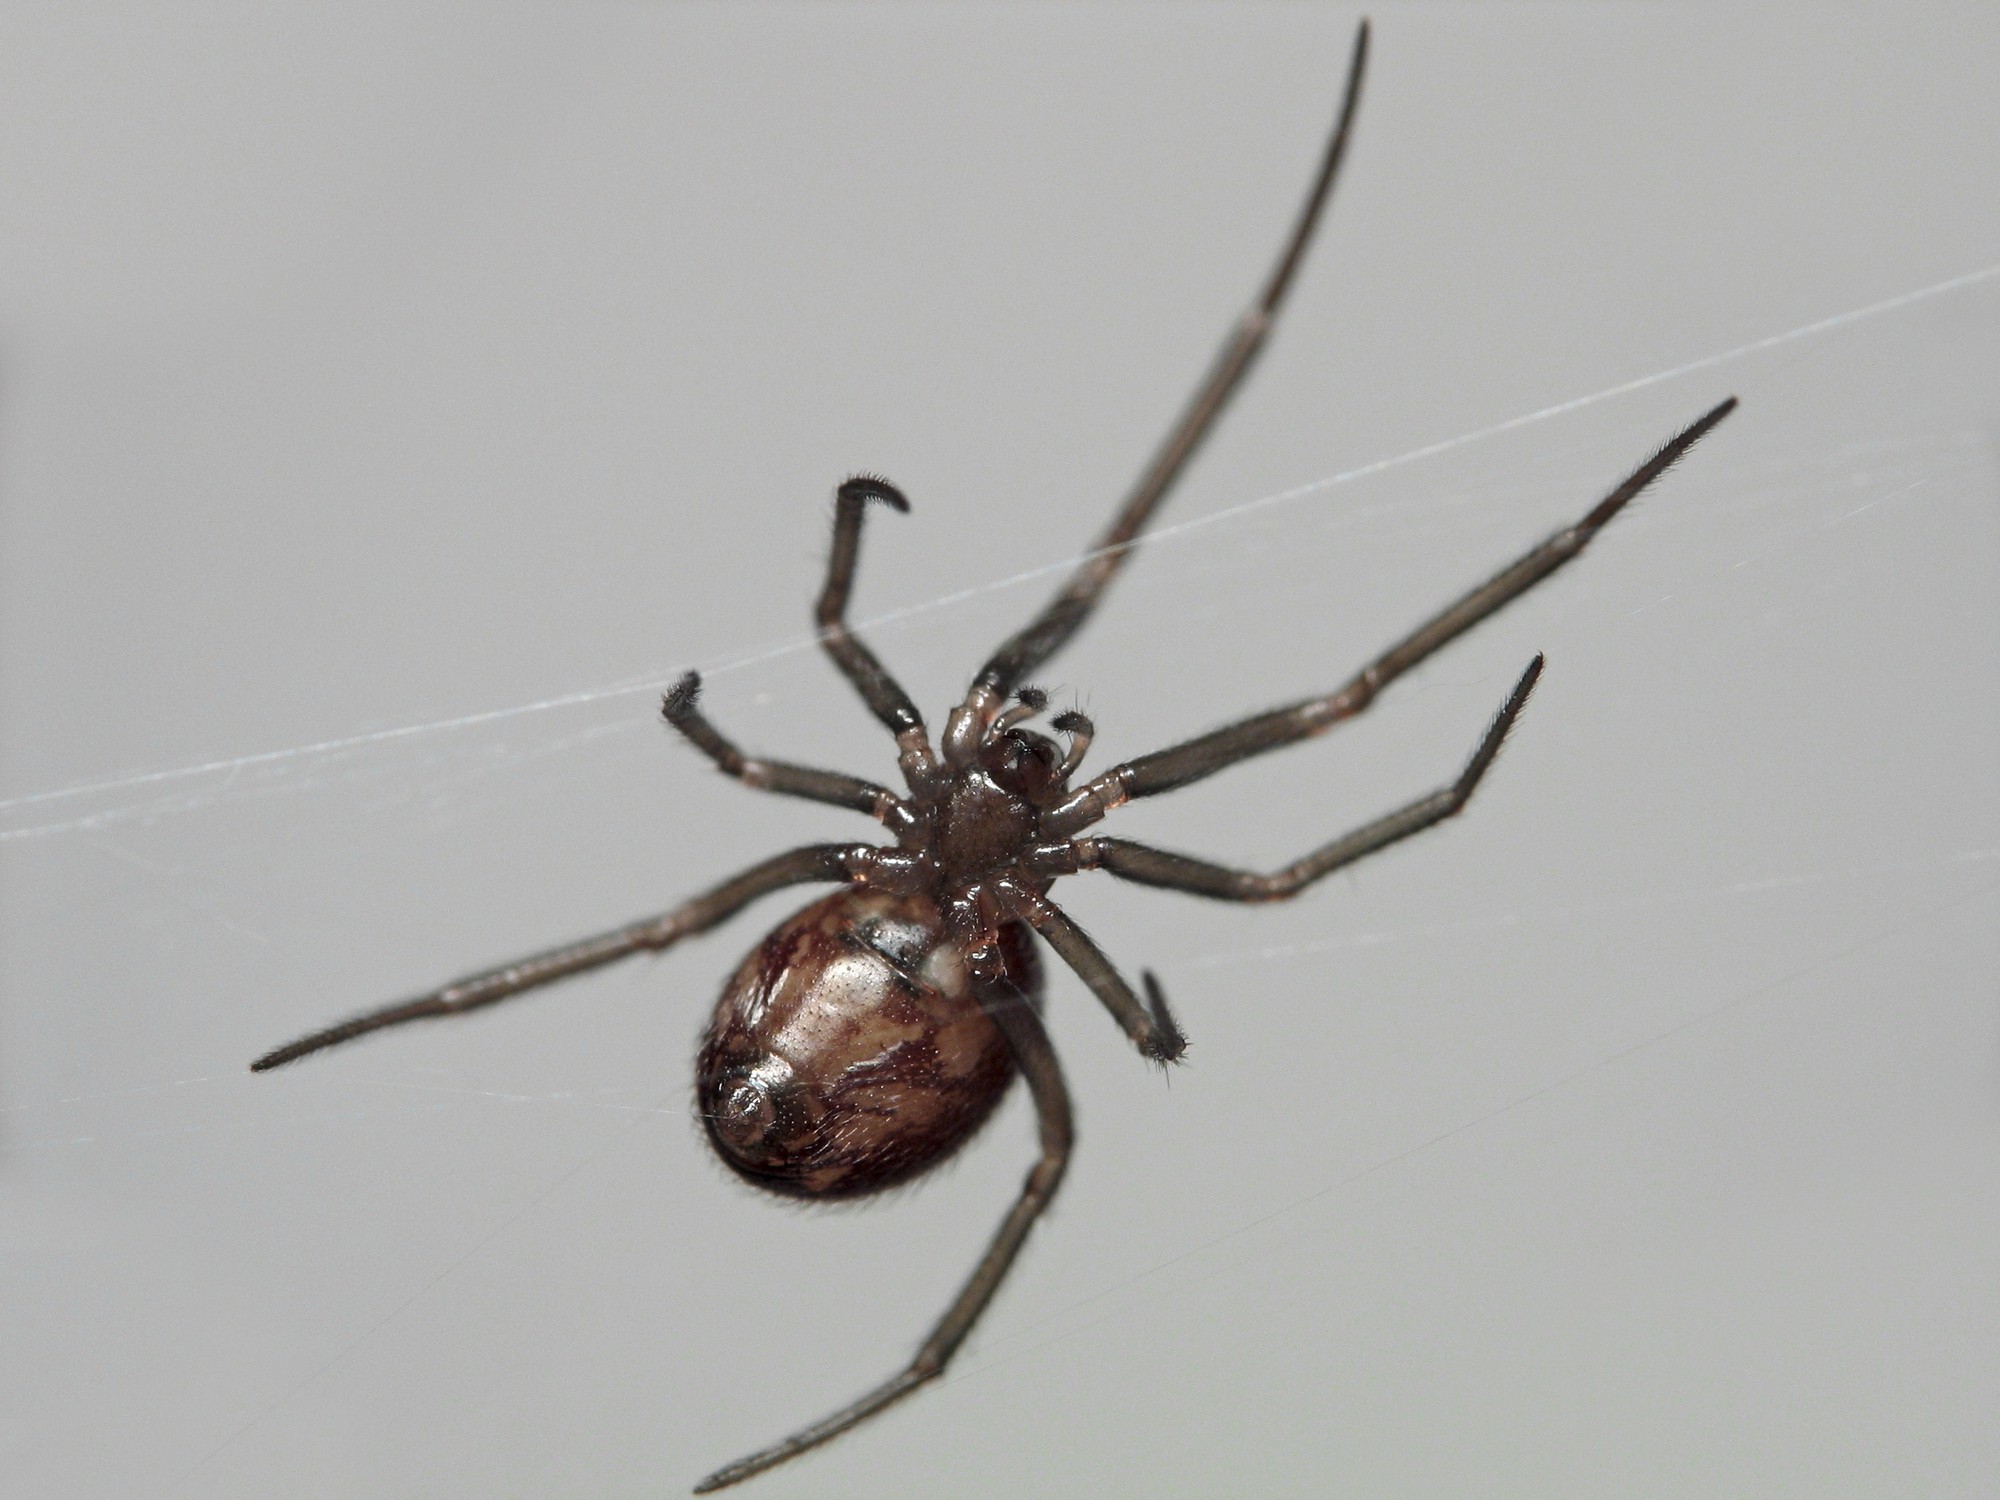   Hội chứng sợ nhện có vẻ như phổ biến hơn hội chứng sợ bóng tối  